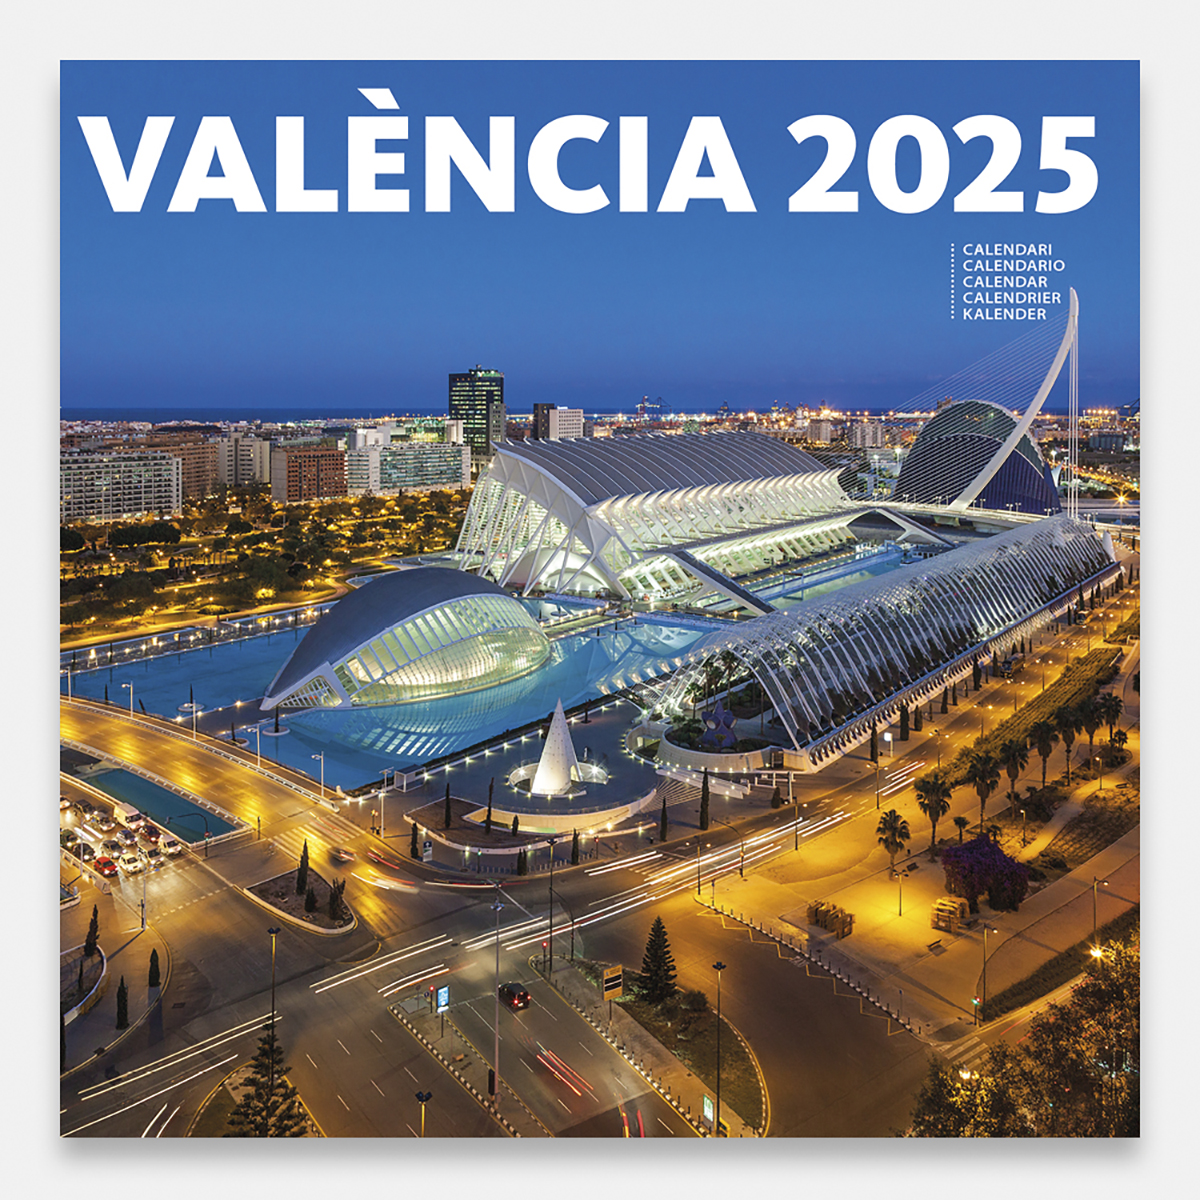 Calendario 2025 Valencia 25valg calendario pared 2025 valencia